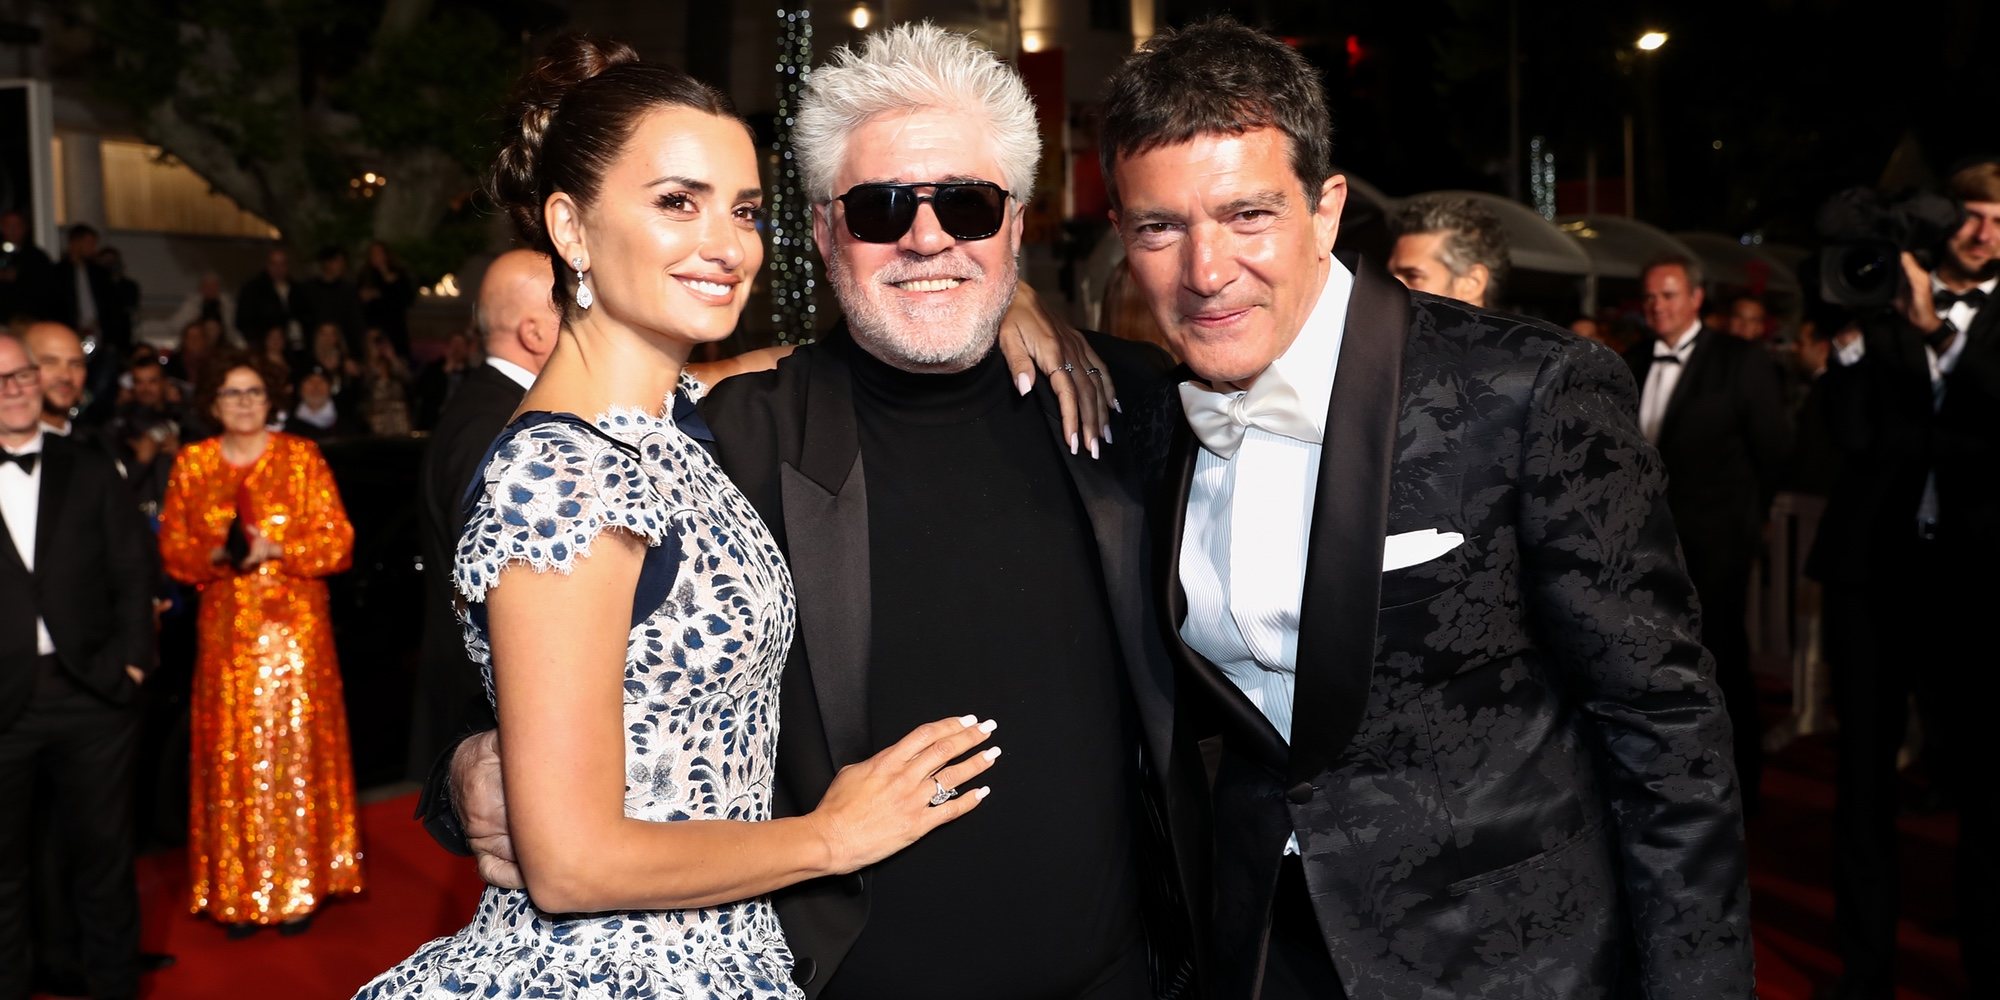 Almodóvar, Banderas y Penélope Cruz comparten protagonismo en Cannes con Bella Hadid y Amber Heard